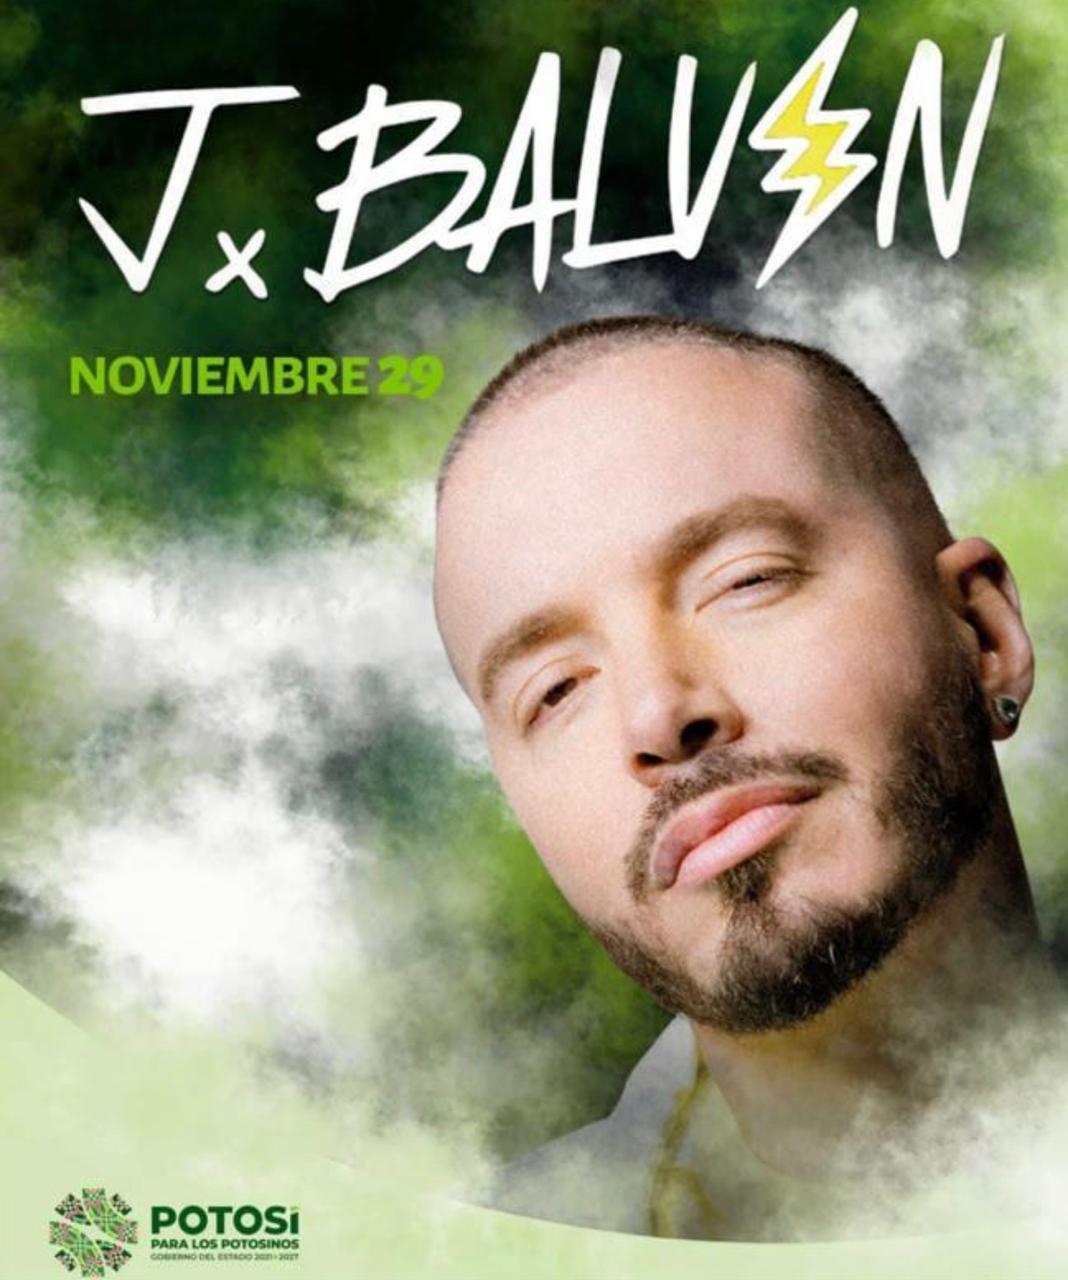 Gallardo Cardona, confirmó la presentación gratuita del artista reggaetonero J Balvin en las instalaciones de la Feria Nacional Potosina